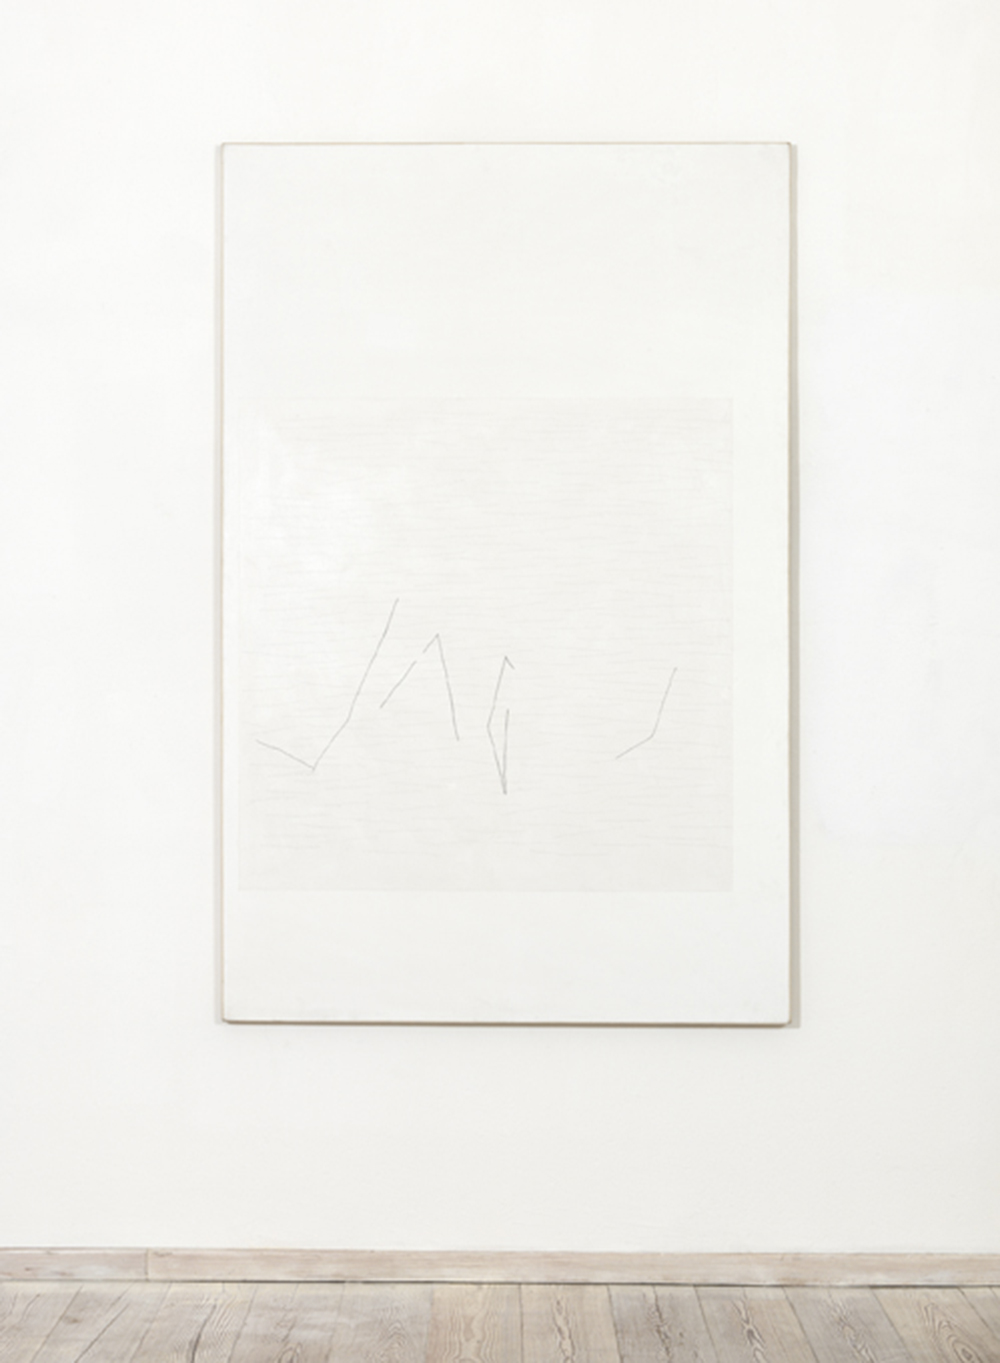 B, 1977, acrilici, pearl white, pastello e contè su tela, cm 200x130